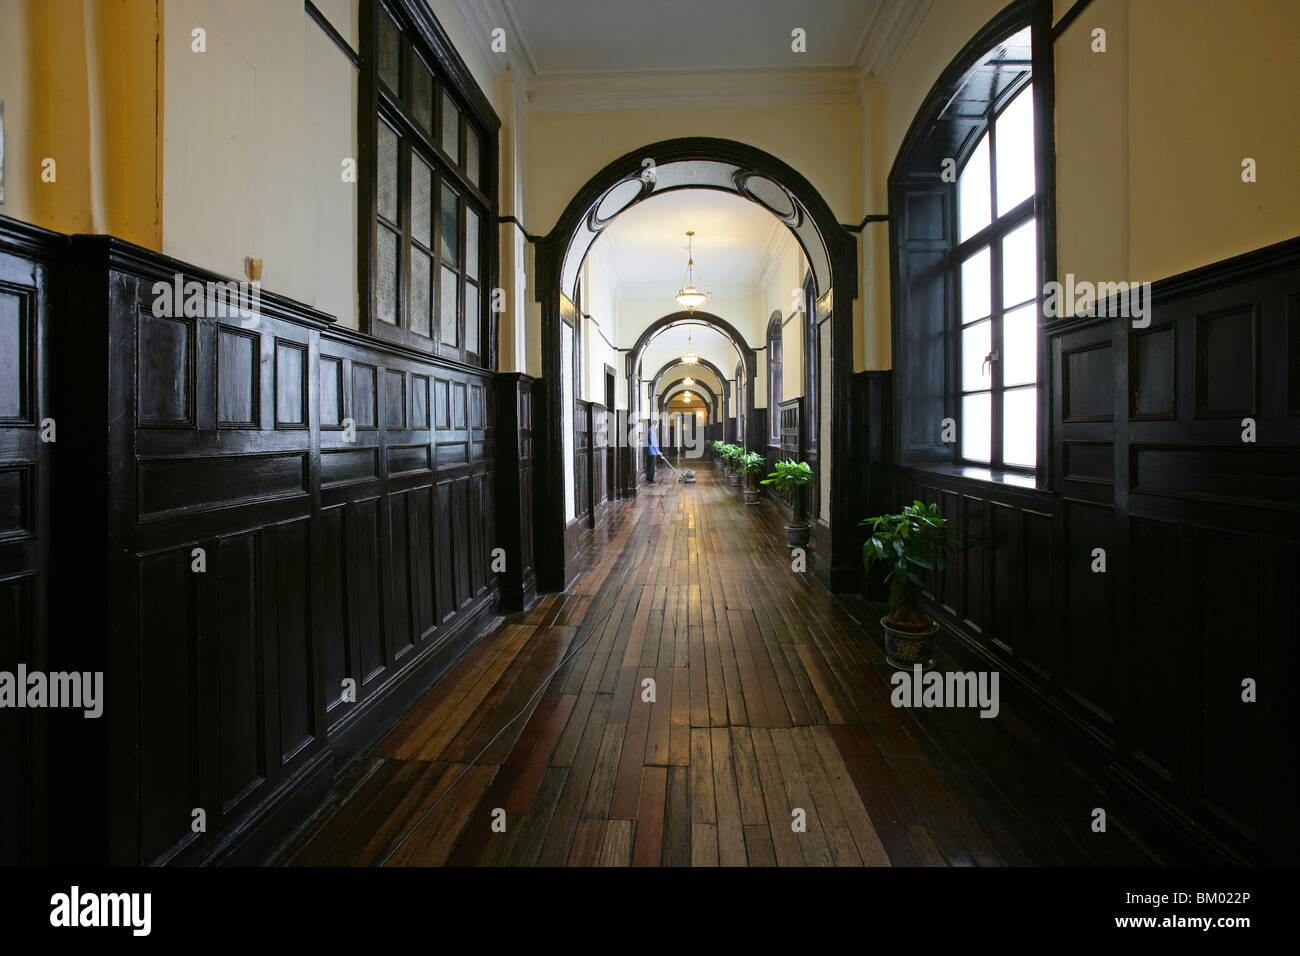 L'hôtel Astor House Pujiang,, hall, hôtel traditionnel, style tudor, flair, intérieur victorien Banque D'Images